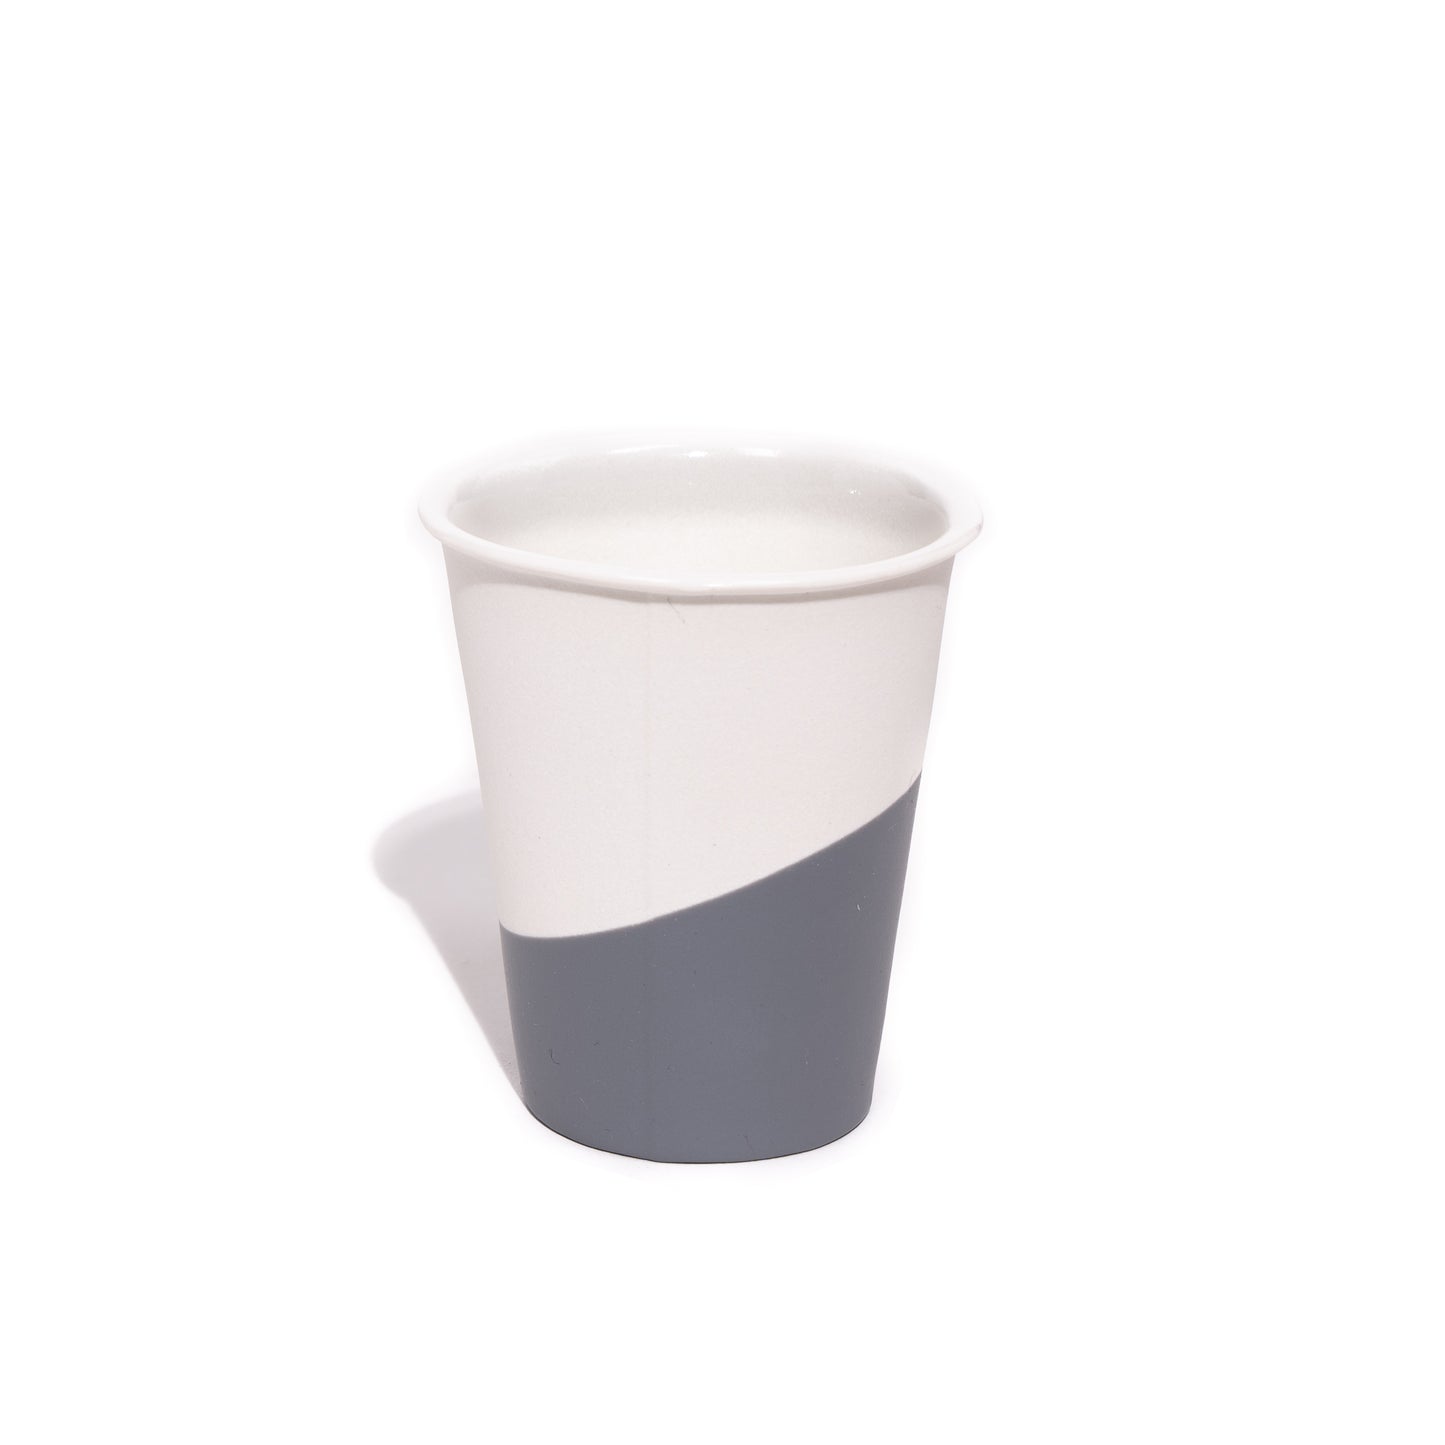 Rubber Paper Cup - 6oz